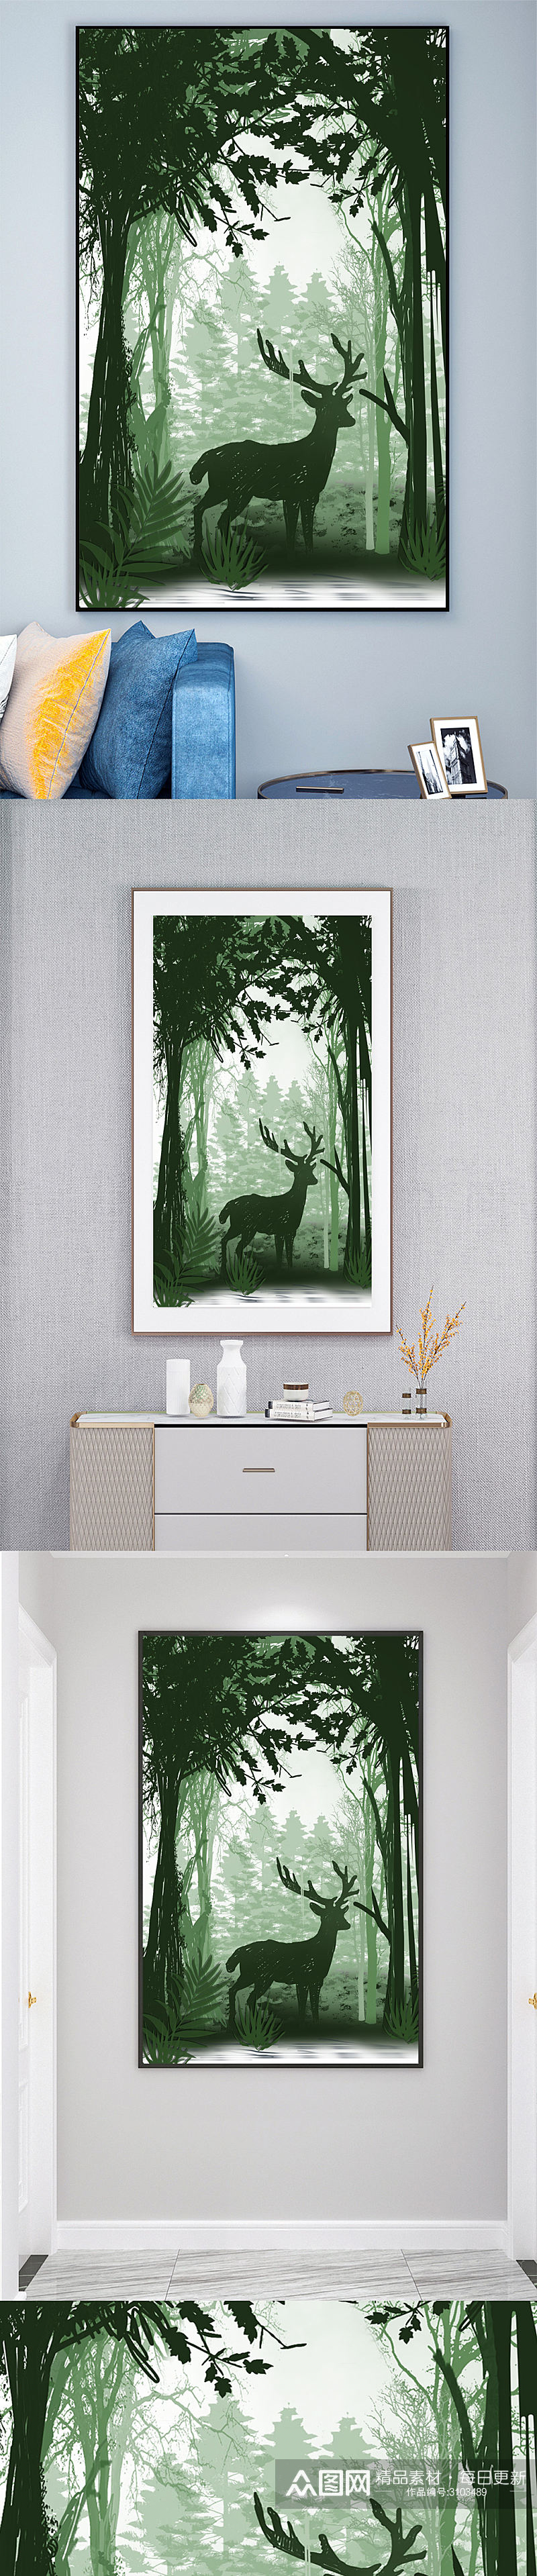 森林麋鹿装饰画玄关壁画素材